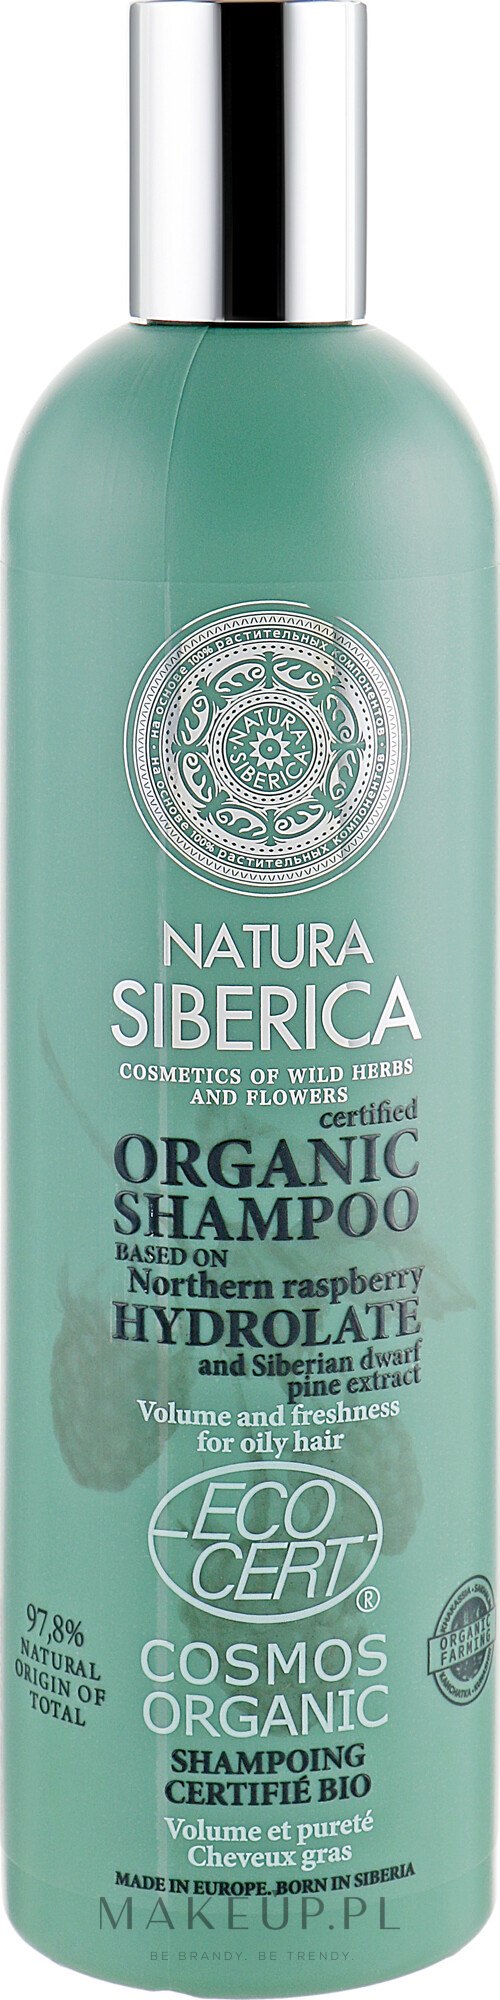 szampon do włosów natura siberica szampon neutral